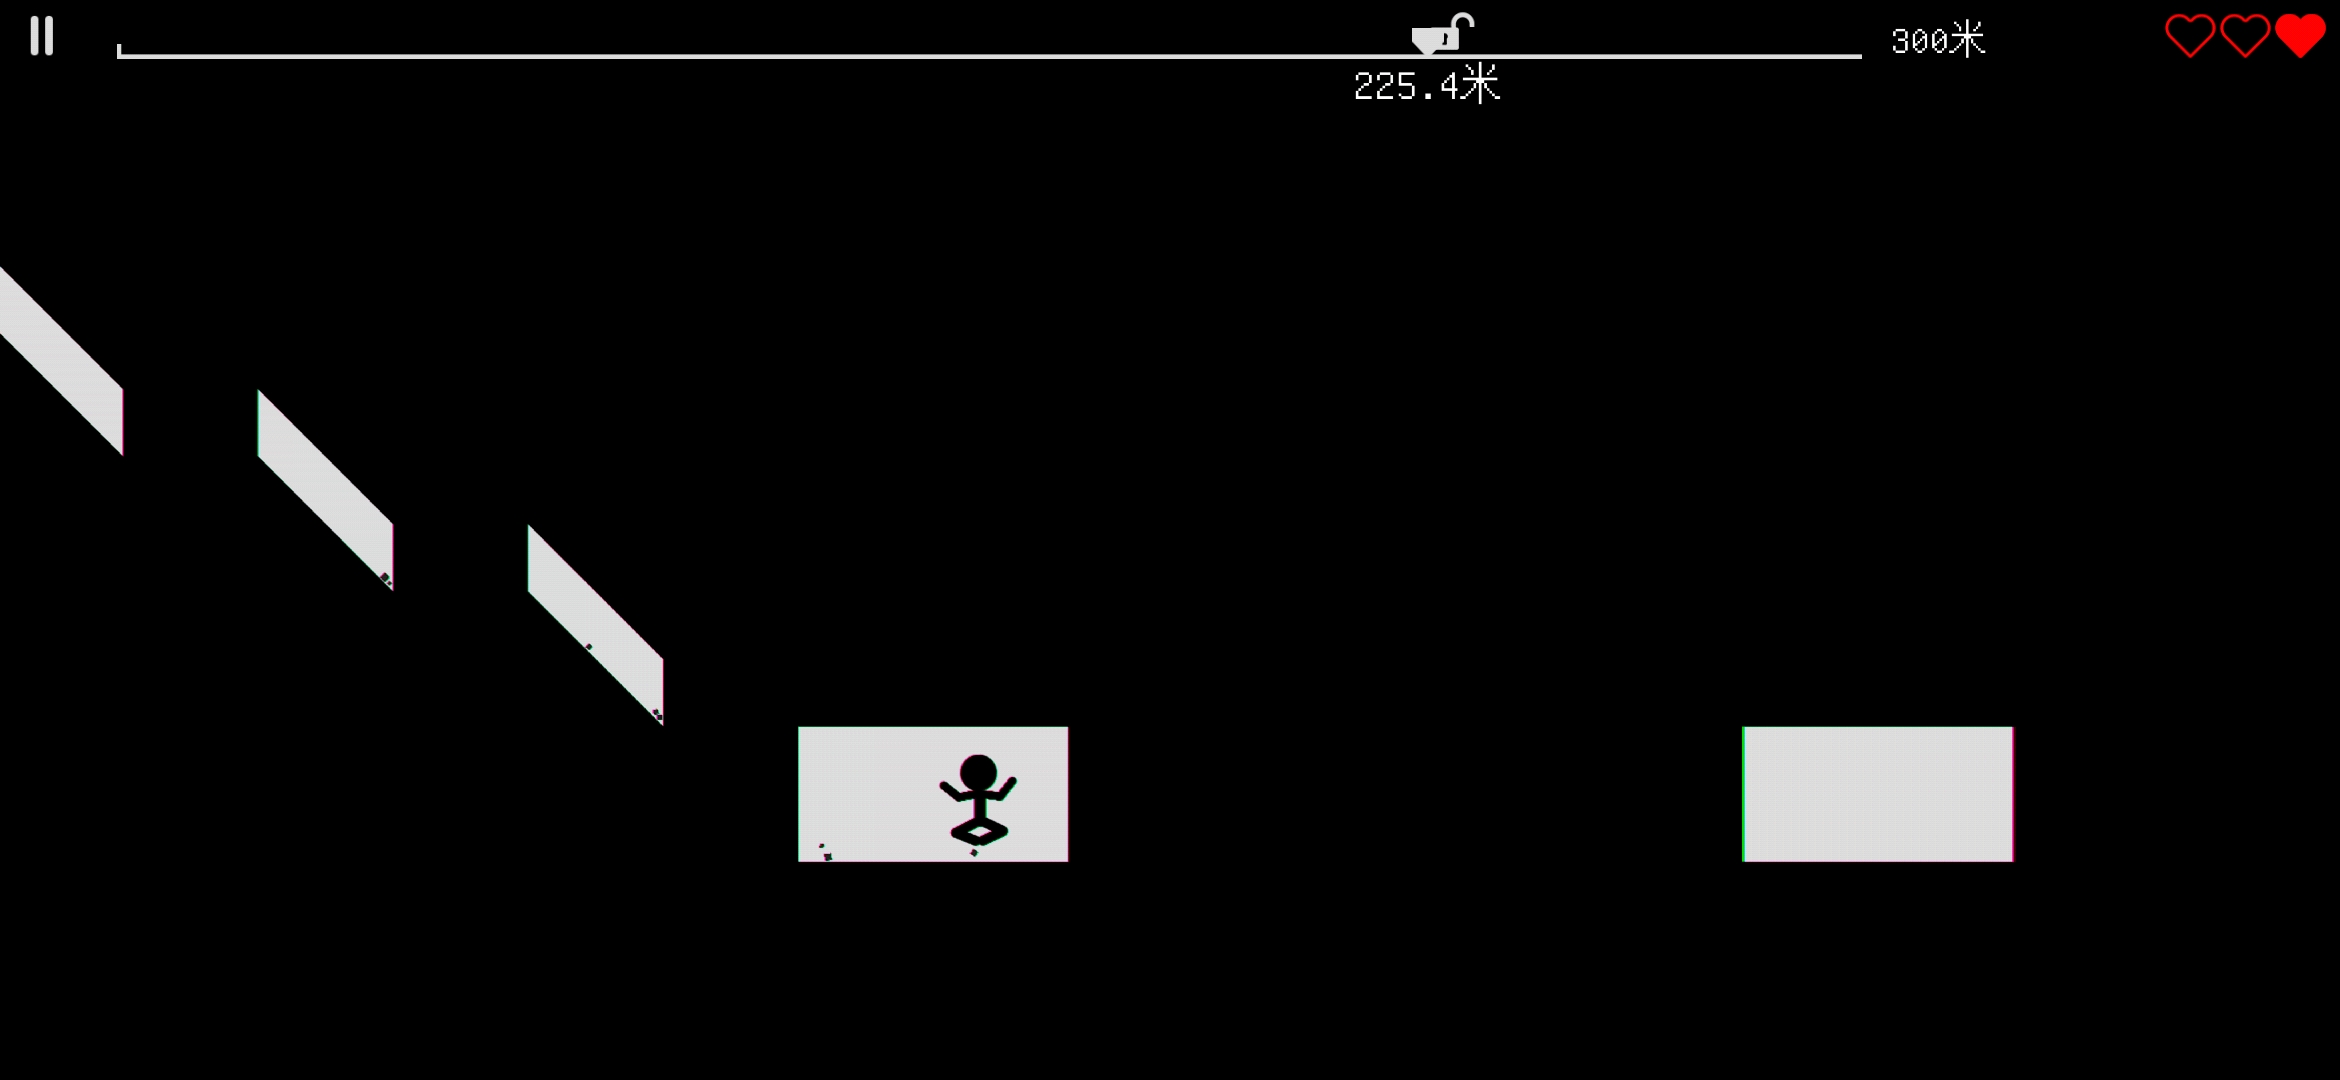 游戏推荐：《跑跑先生X》玩法简单但意外刺激的跑酷游戏